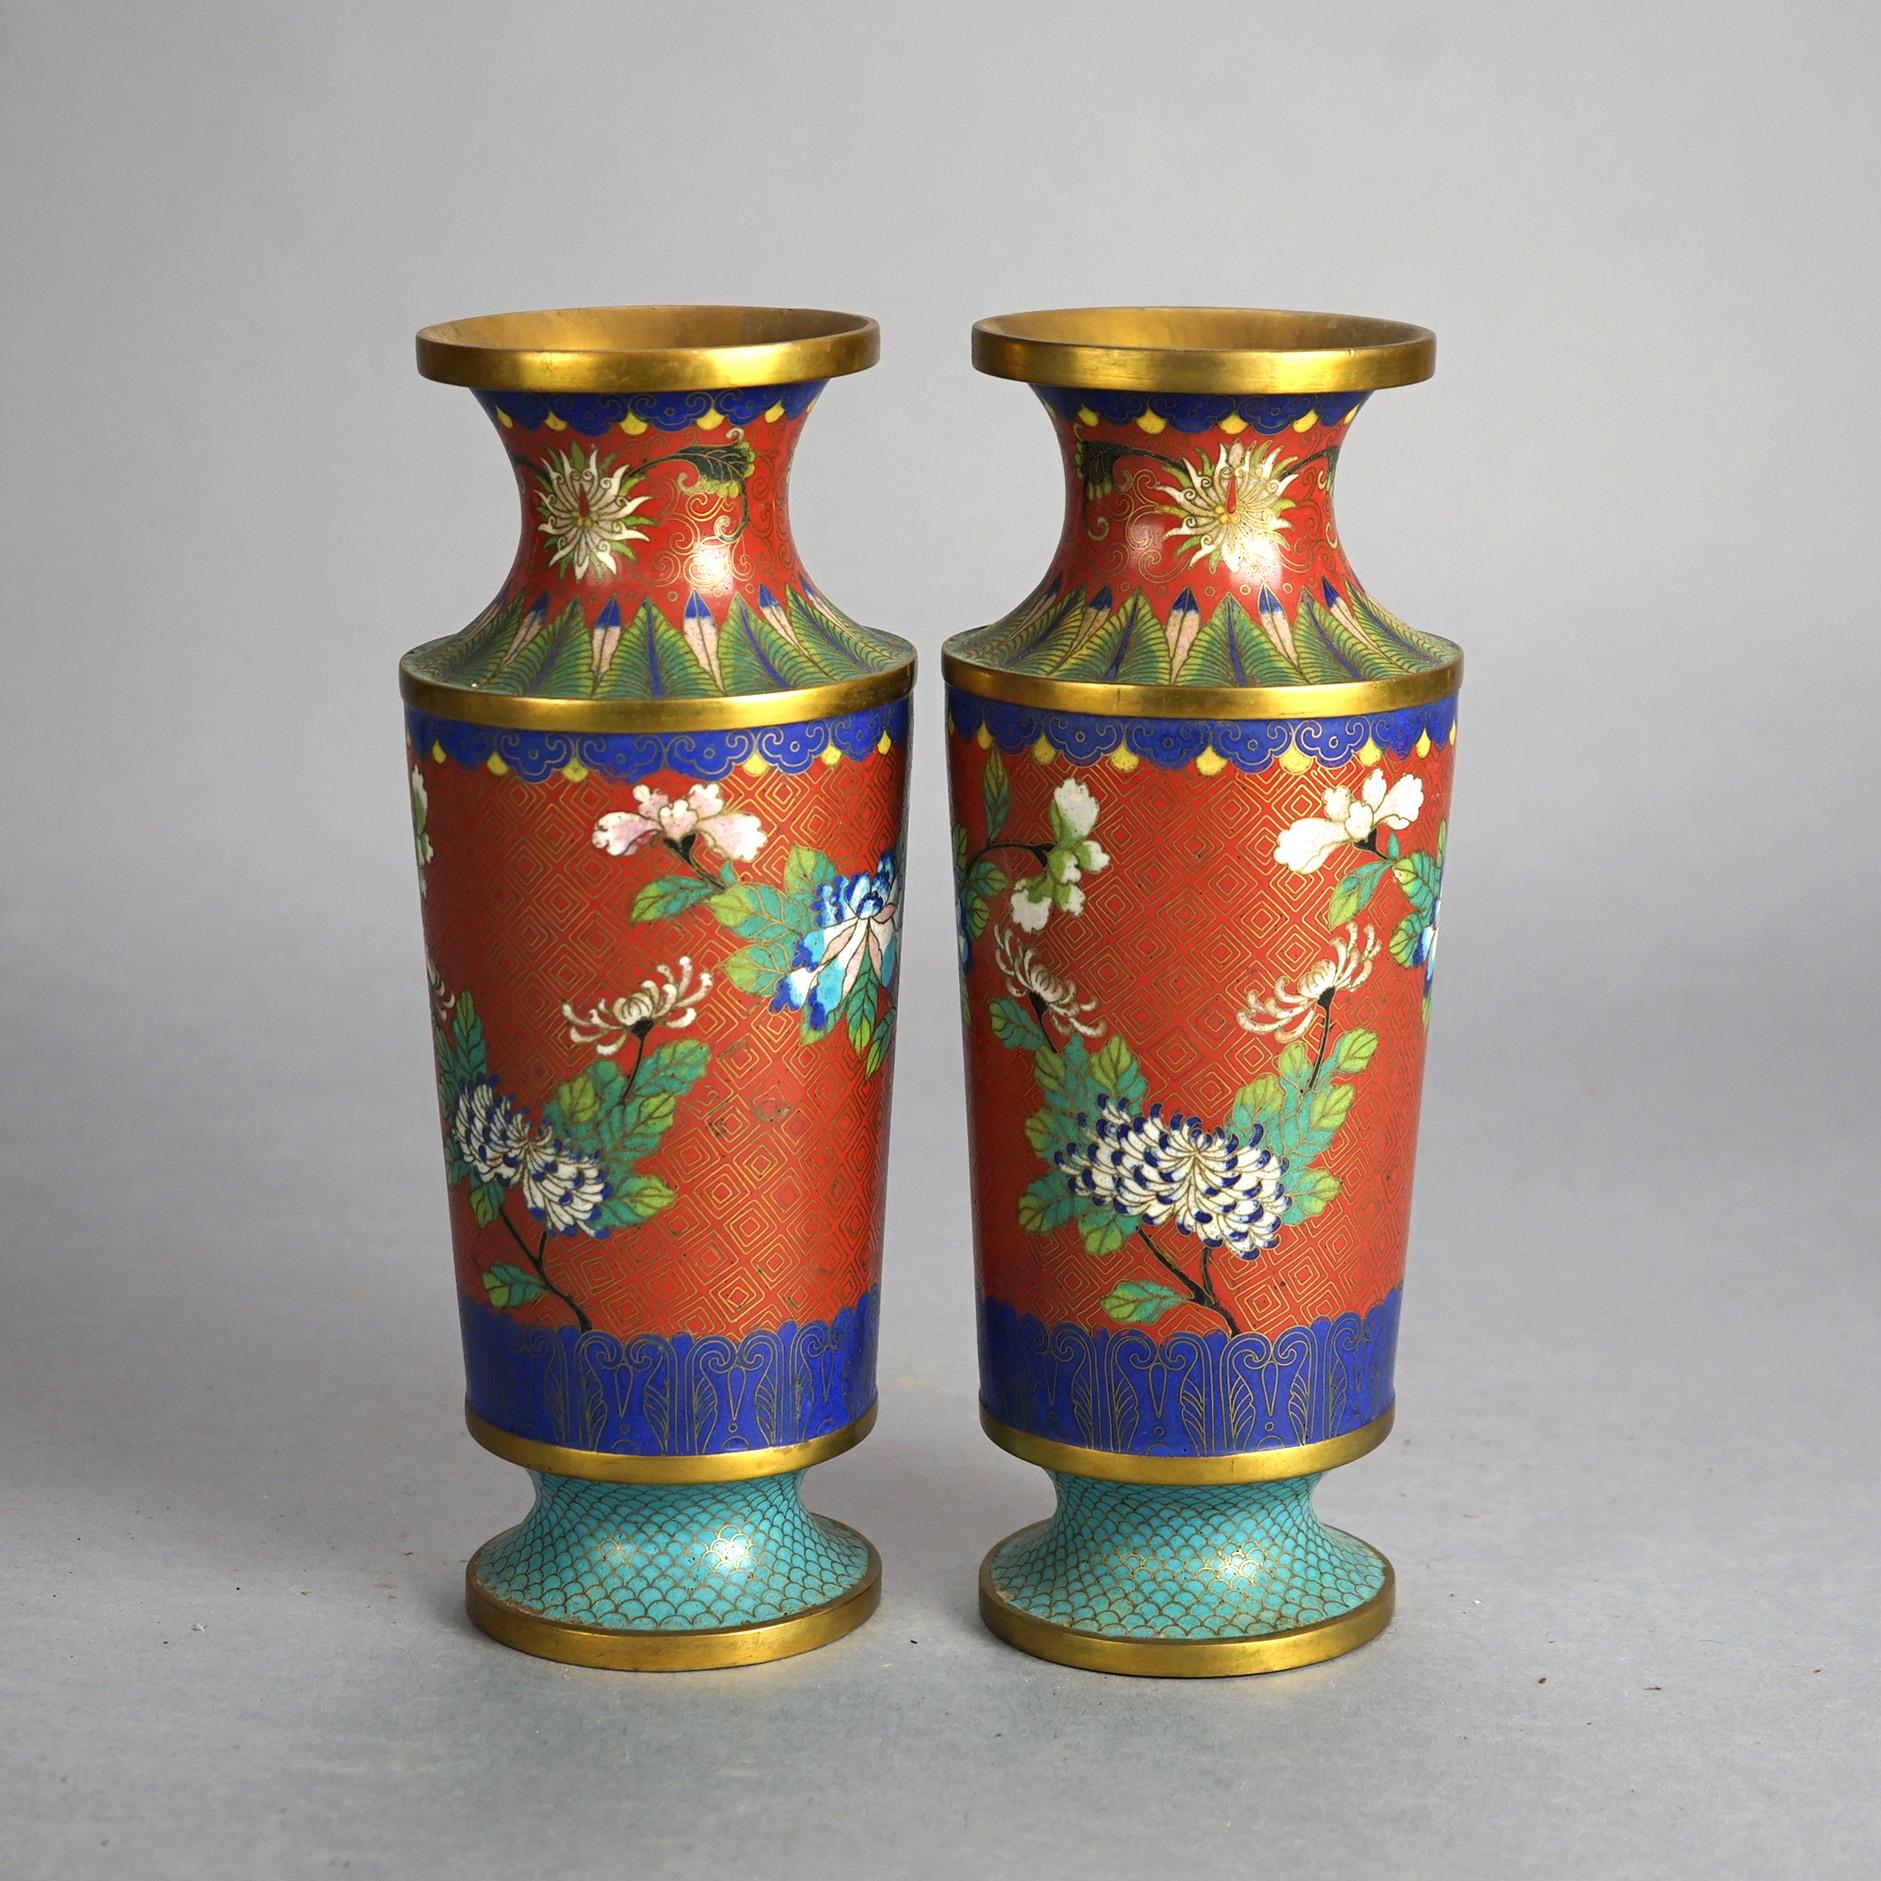 Cloisonné Paire de vases japonais anciens en cloisonné, émaillé de garnitures florales et sur pied C1920